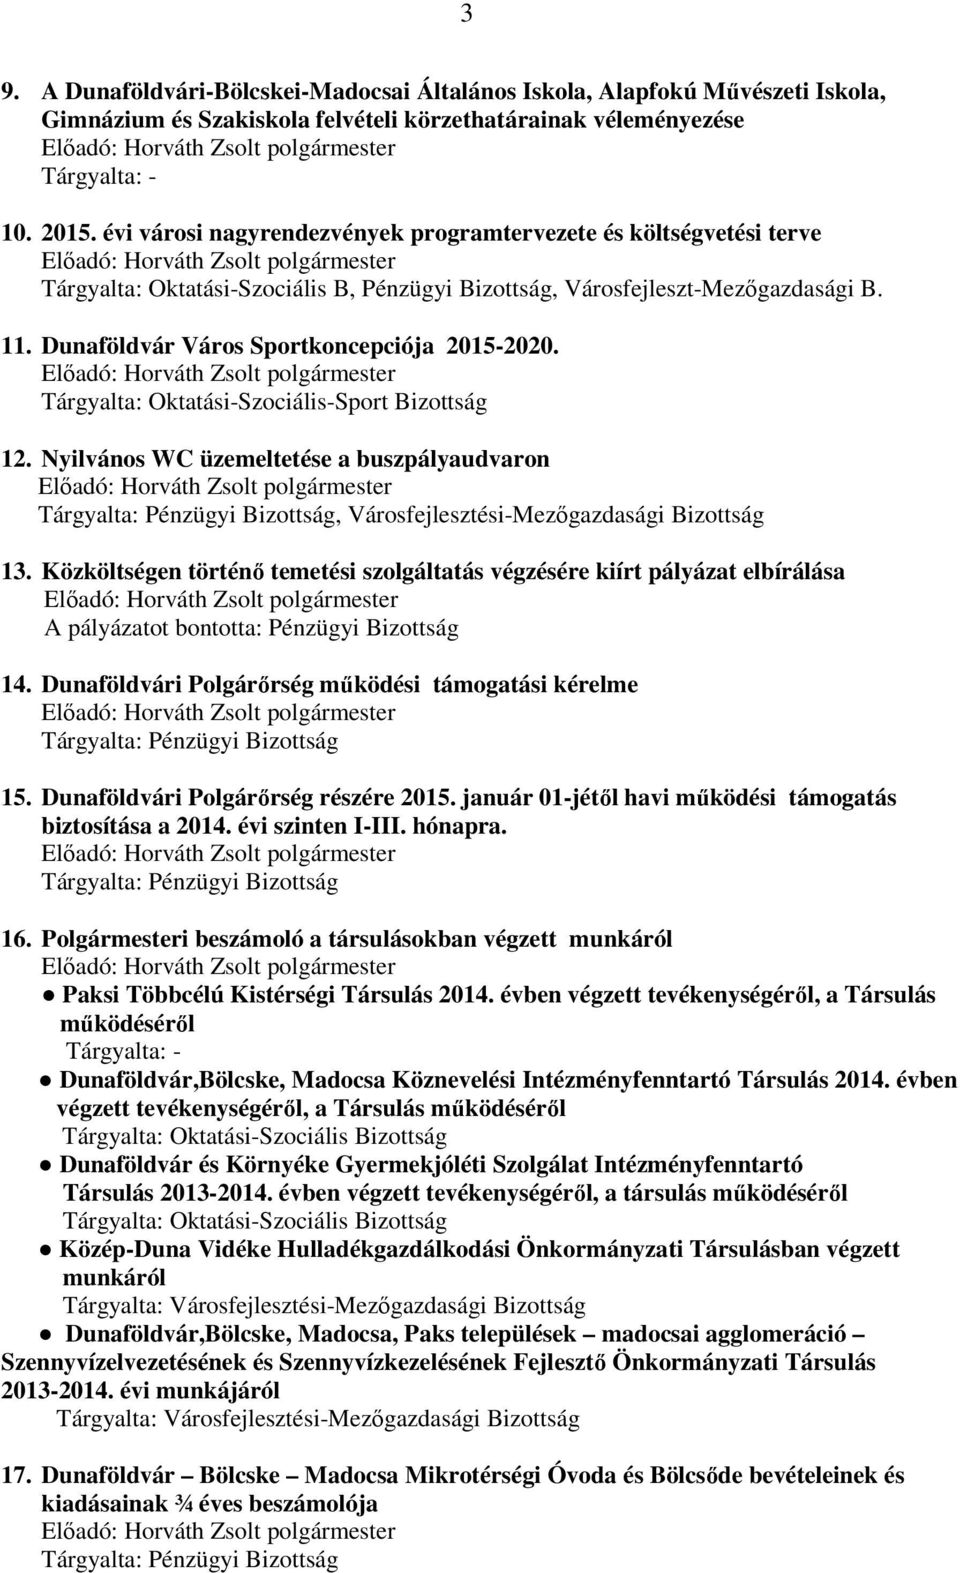 Dunaföldvár Város Sportkoncepciója 2015-2020. Tárgyalta: Oktatási-Szociális-Sport Bizottság 12. Nyilvános WC üzemeltetése a buszpályaudvaron, Városfejlesztési-Mezőgazdasági Bizottság 13.